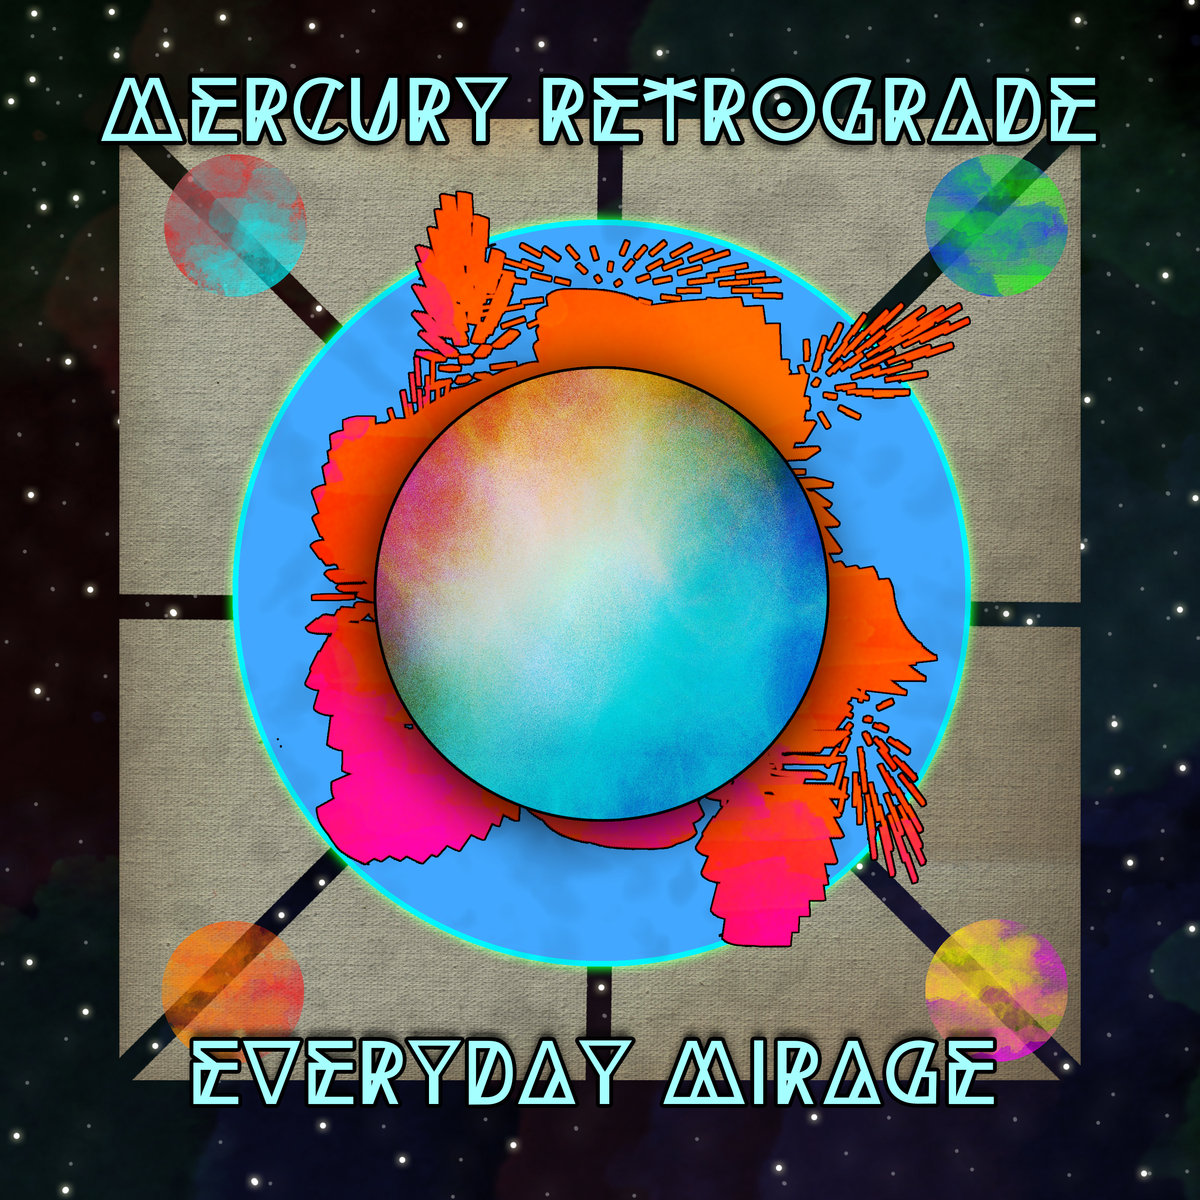 Album Review: Mercury Retrograde, Everyday Mirage